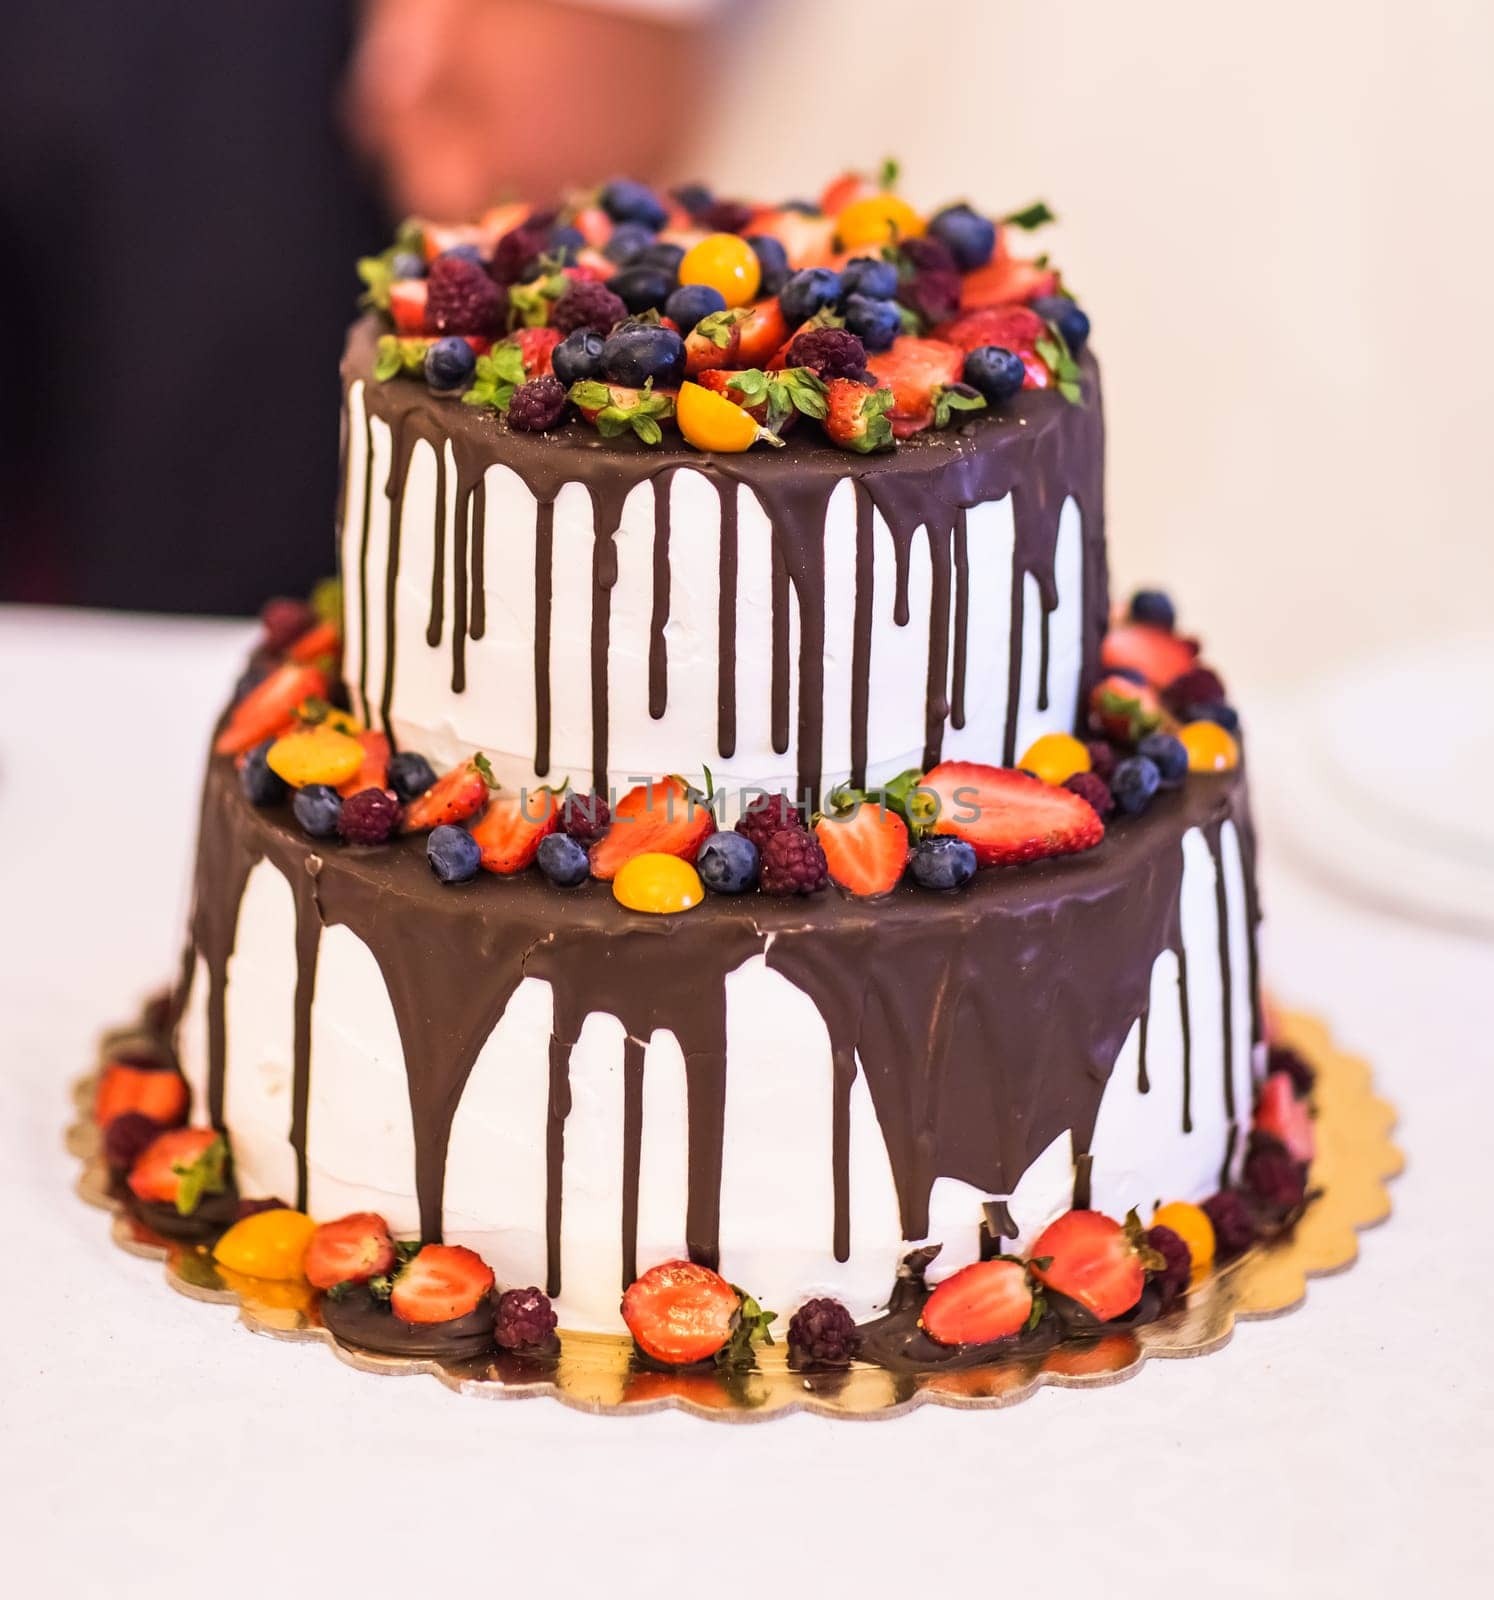 Chocolate Wedding Cake by Satura86